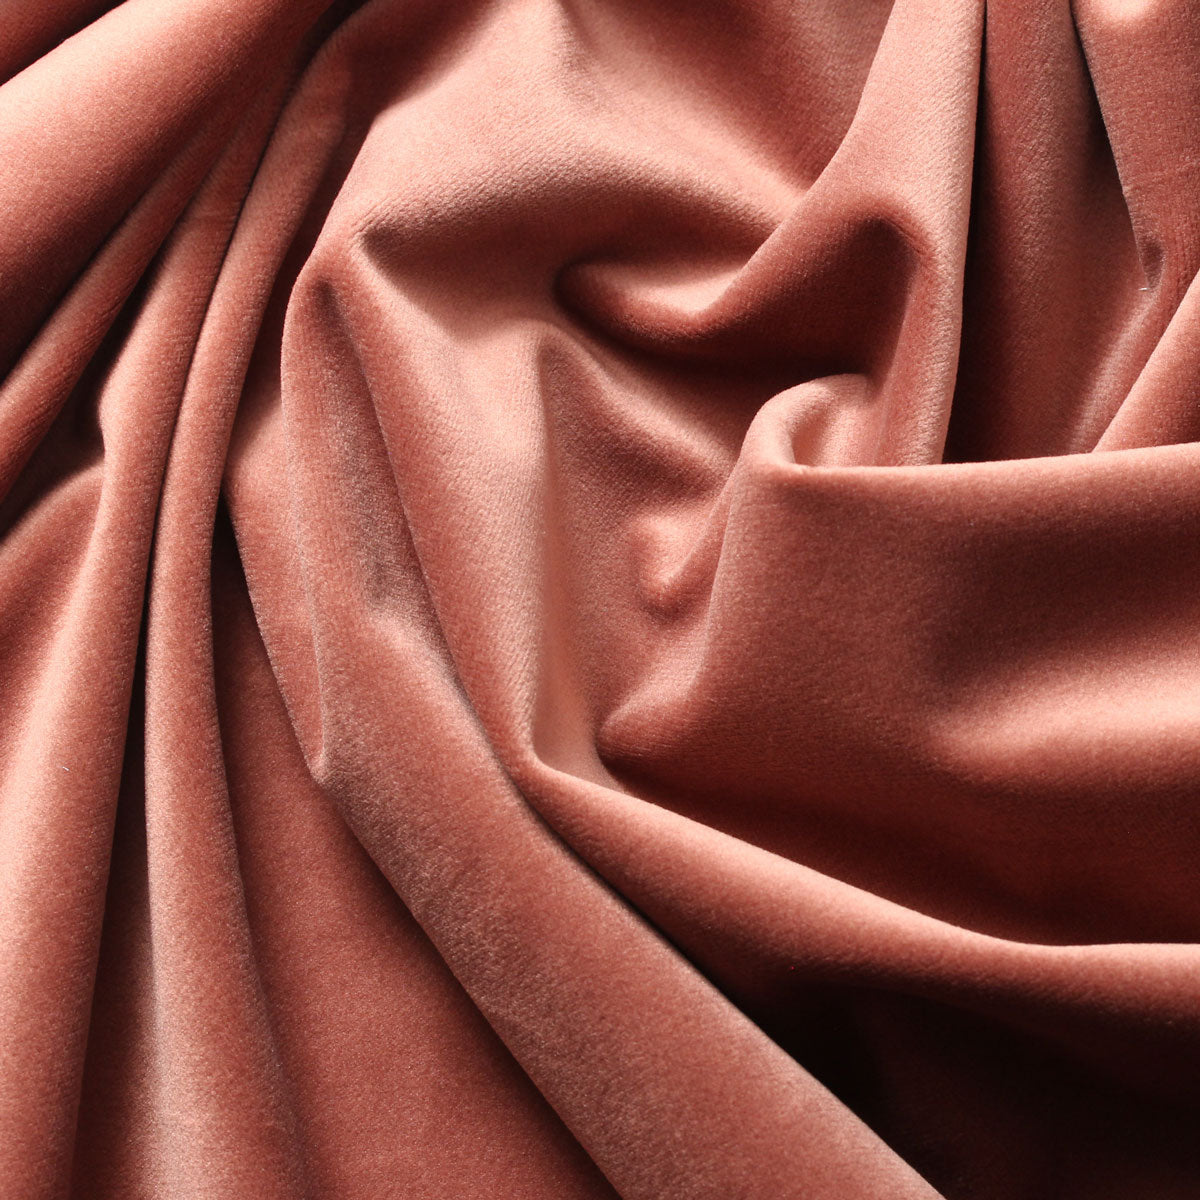 Shop For Como Crimson Velvet Drapery / Upholstery Fabric